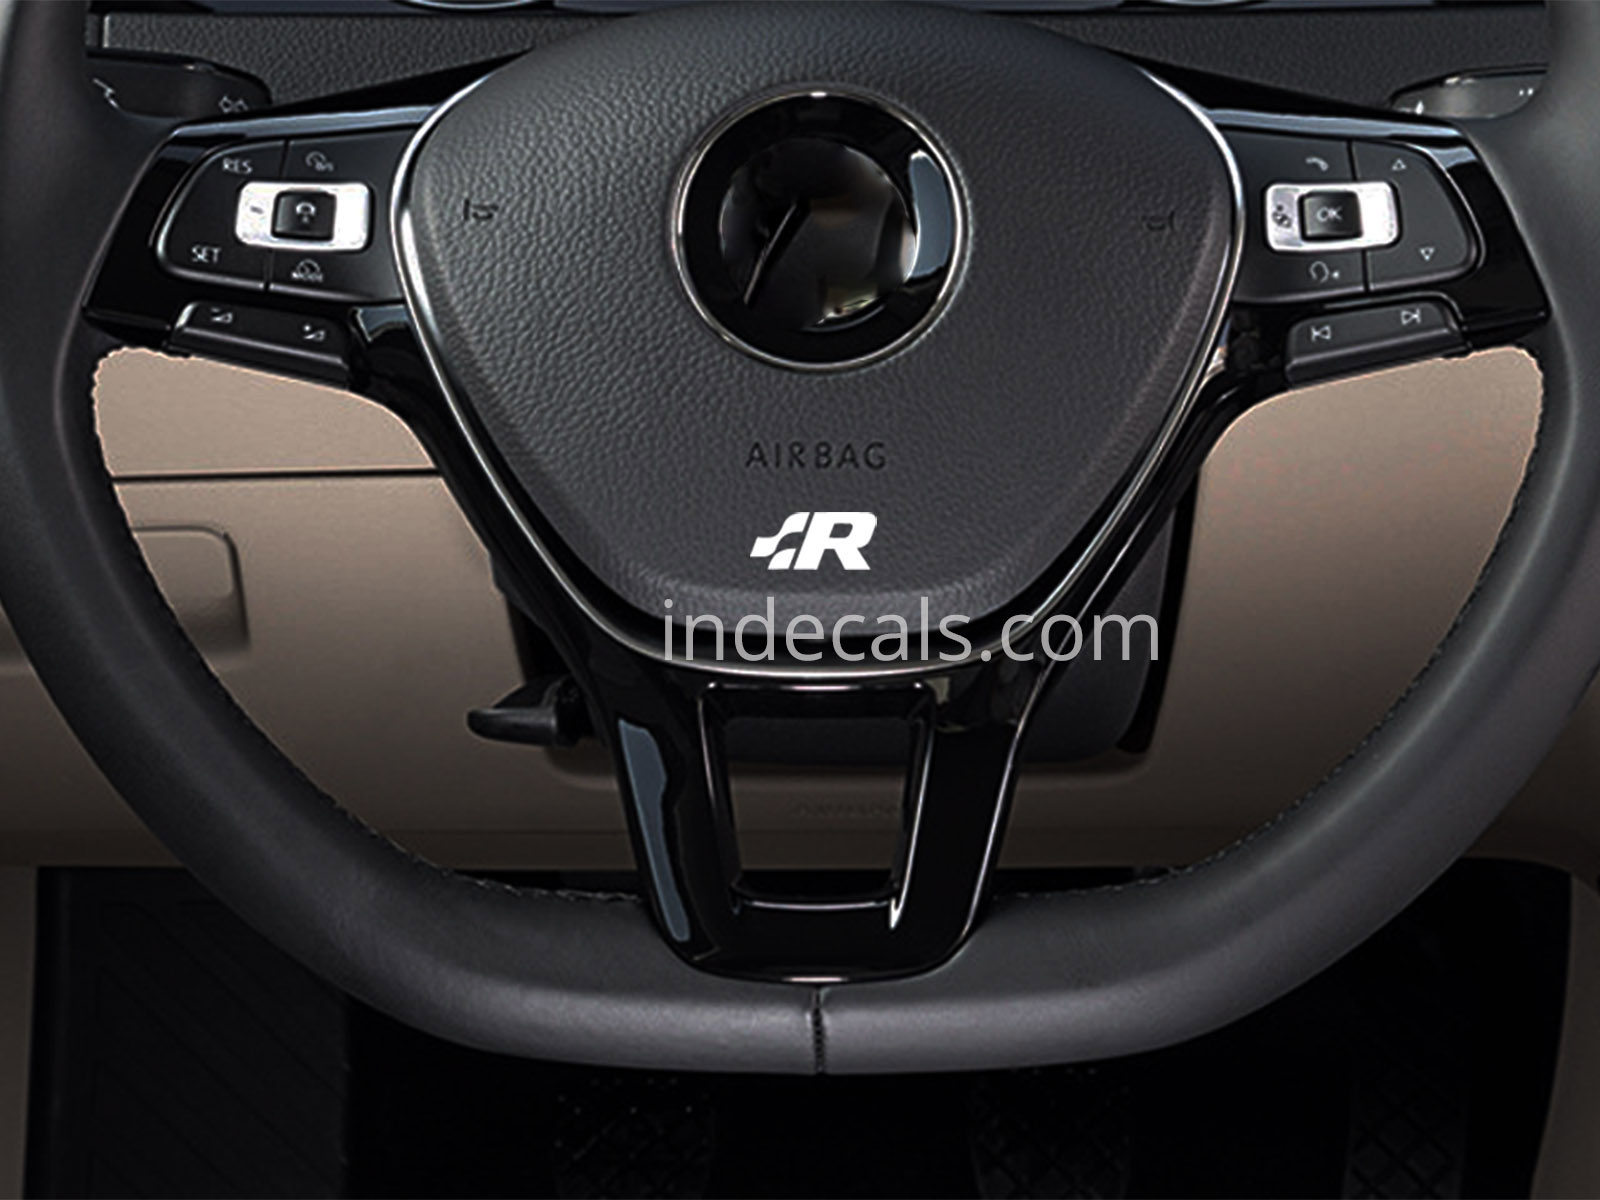 2 x Volkswagen Racing stickers for Steering Wheel